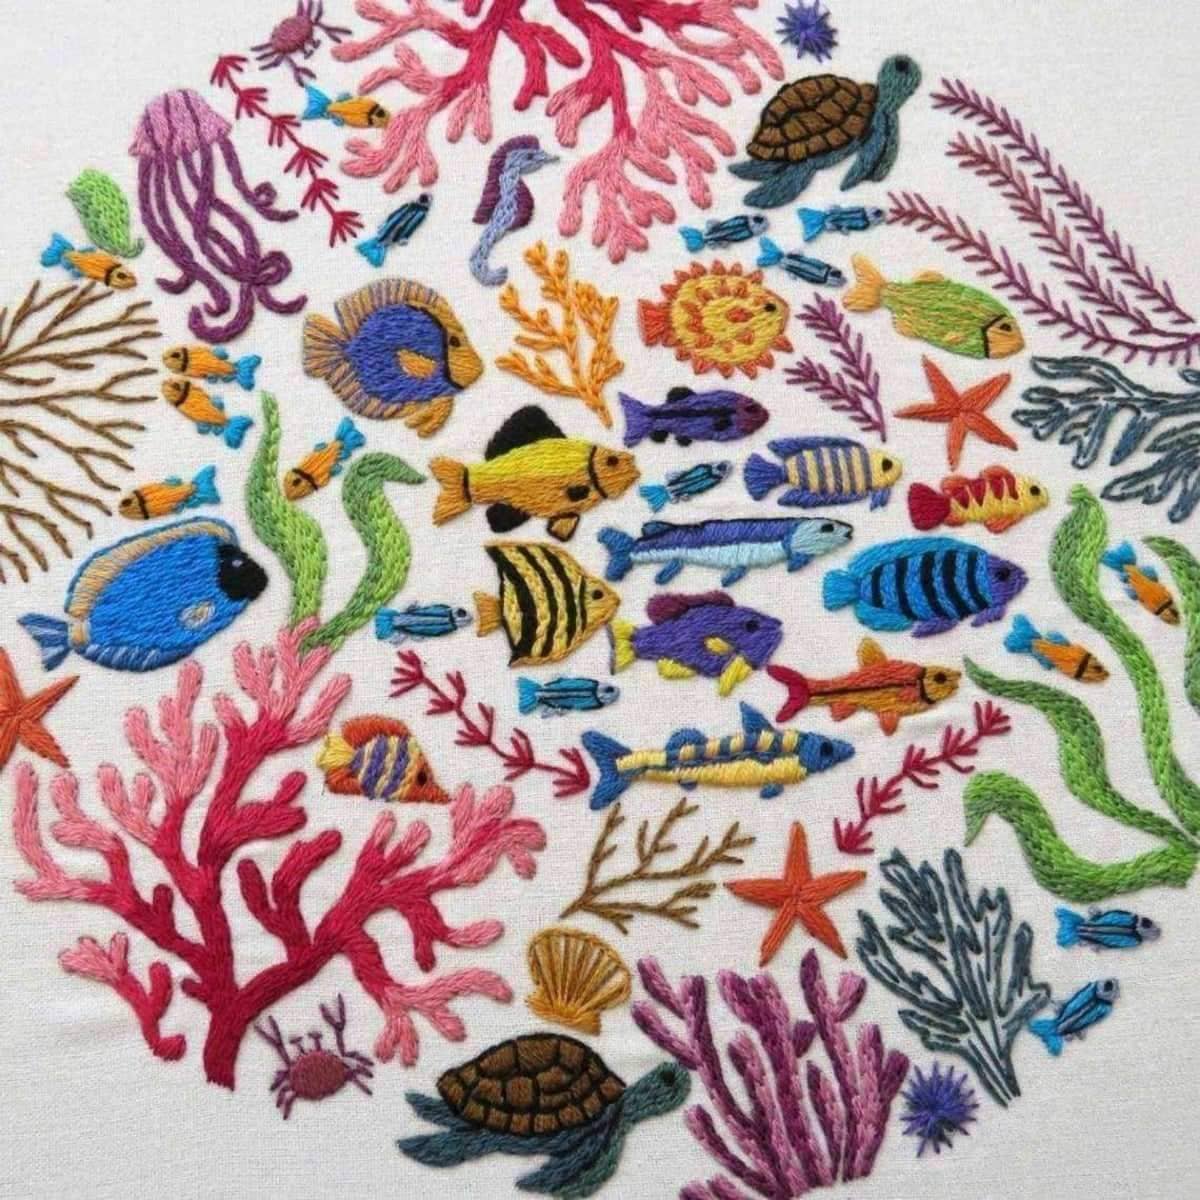 Ocean Wonders, Hand Embroidery Kit